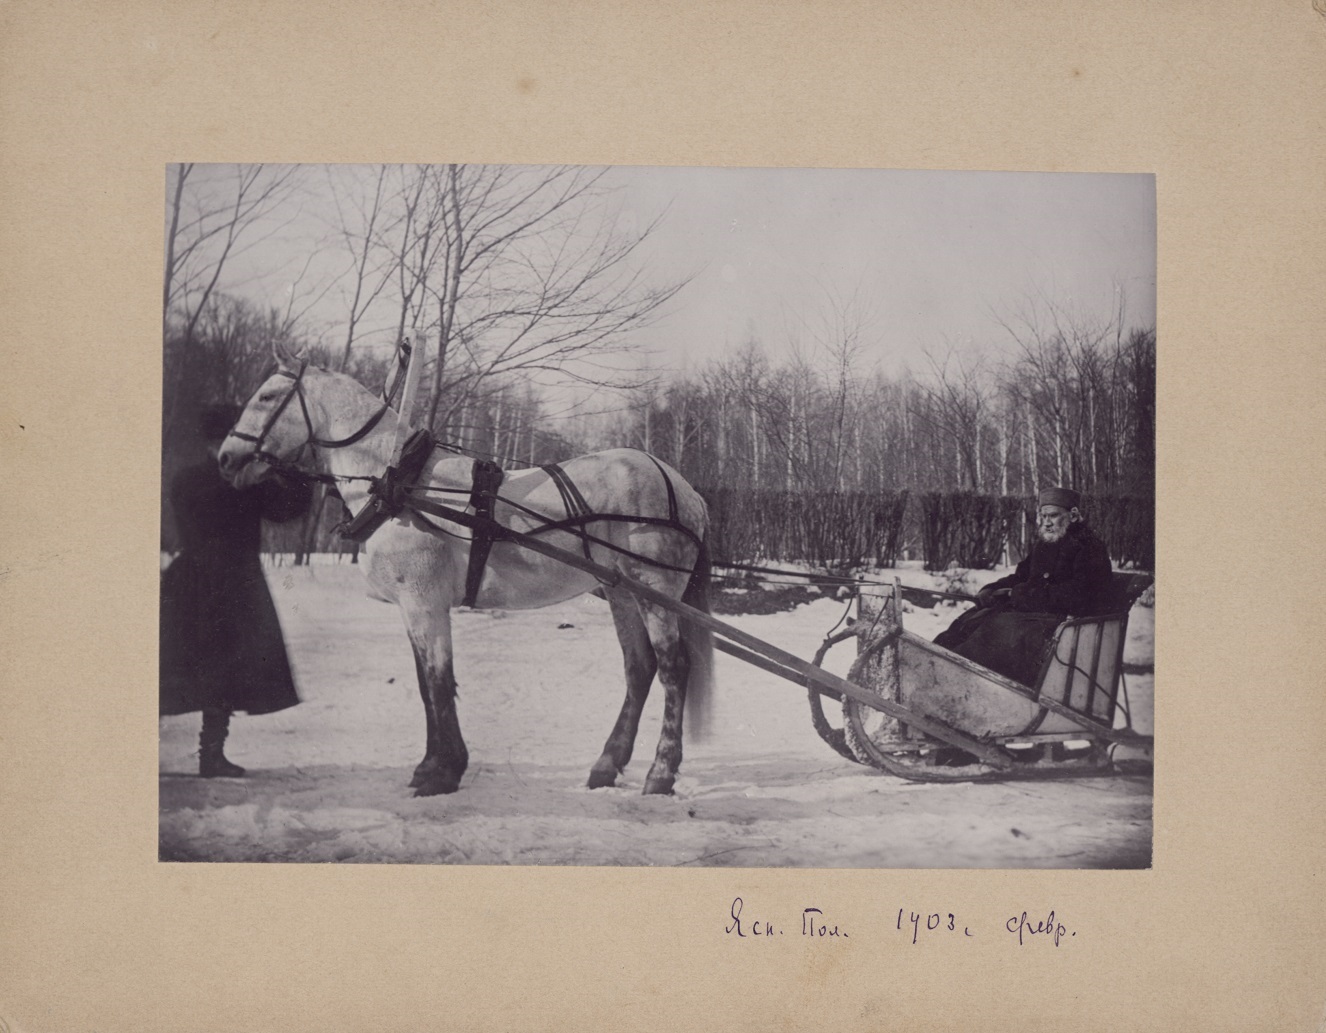 La plupart des photos ont été prises par sa femme Sofia. Son appareil enregistrait les événements importants et la vie quotidienne // Tolstoï dans un traîneau à un cheval, 1903, Iasnaïa Poliana. Photo par Sofia Tolstoï